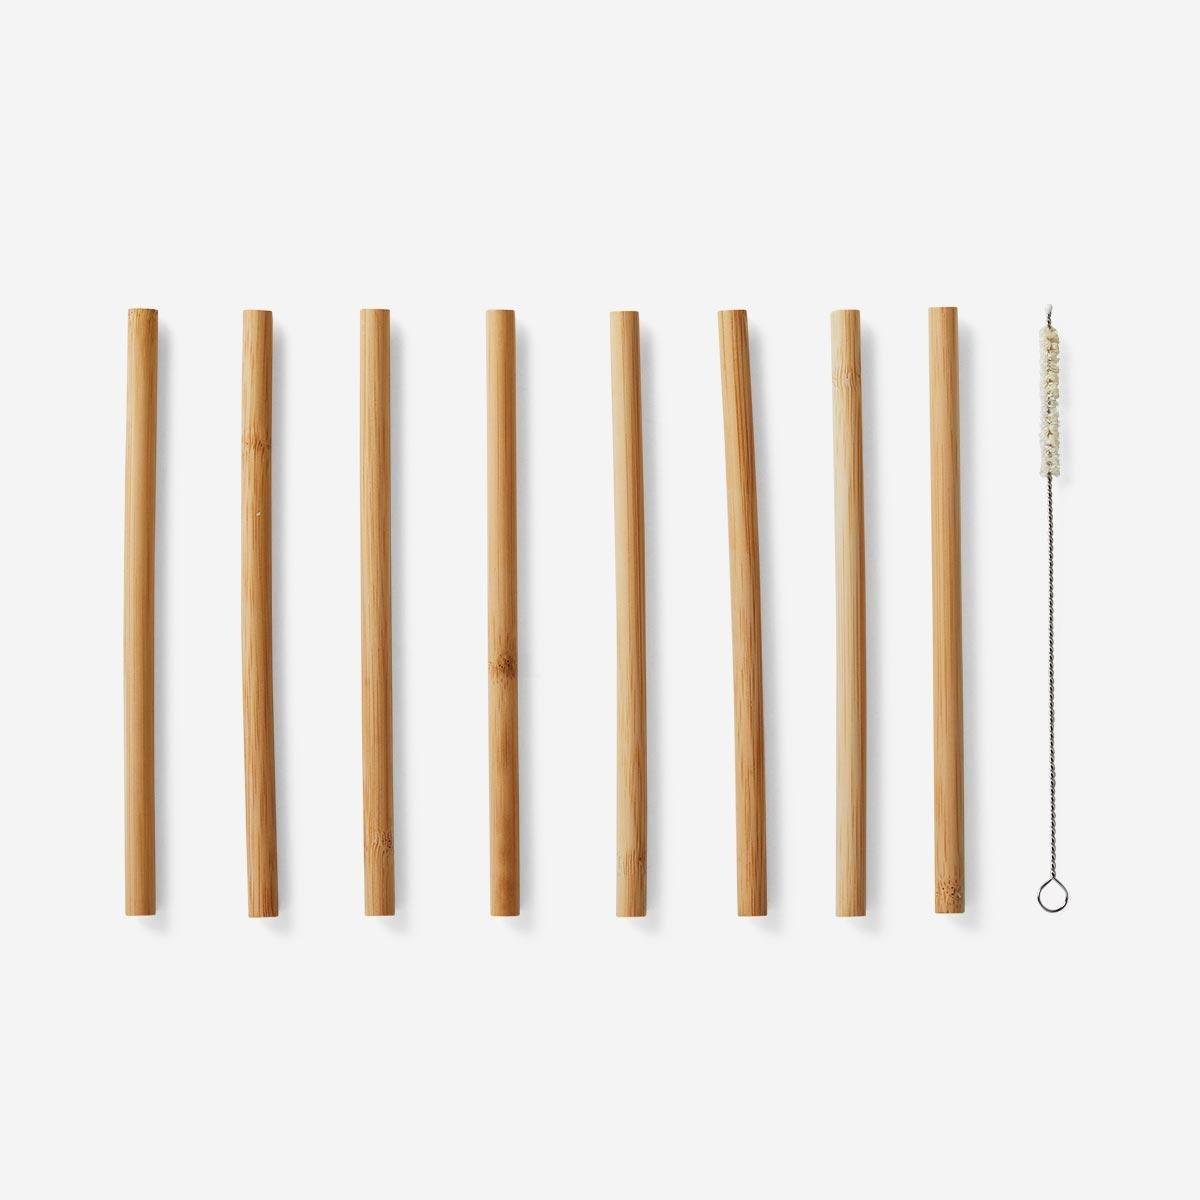 Reusable bamboo straws